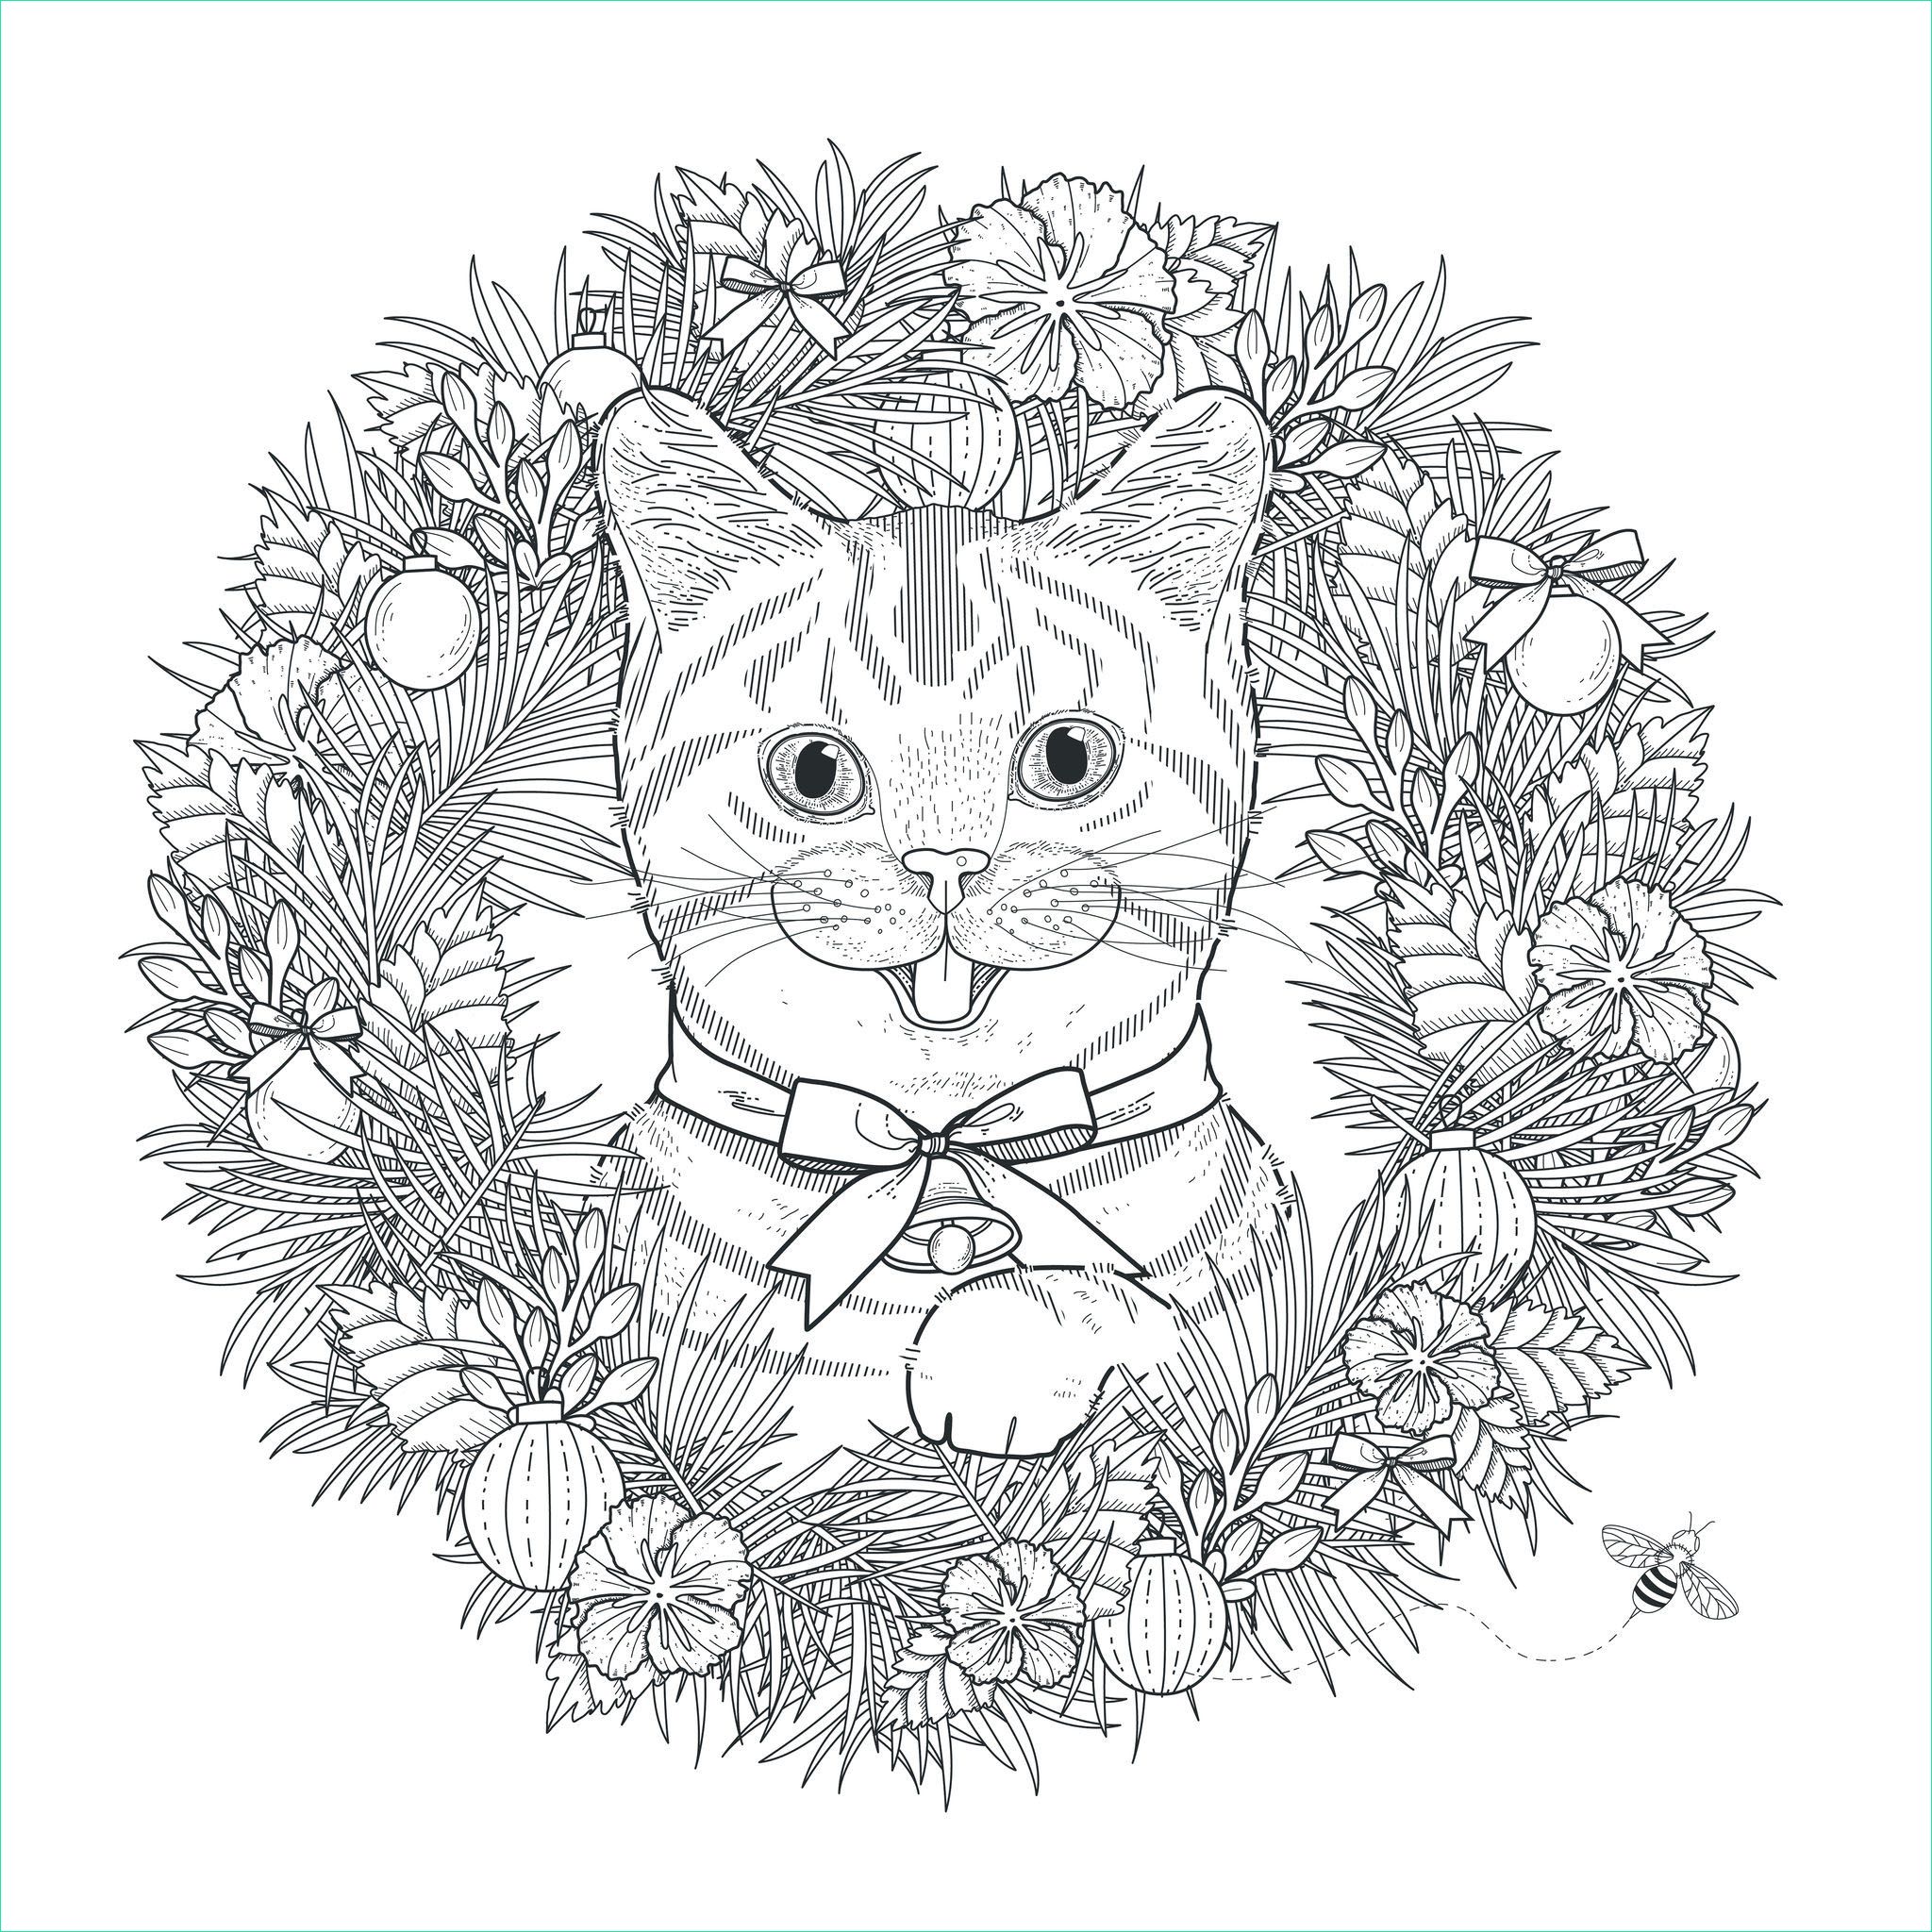 image=mandalas coloring page mandala cat by kchung 1